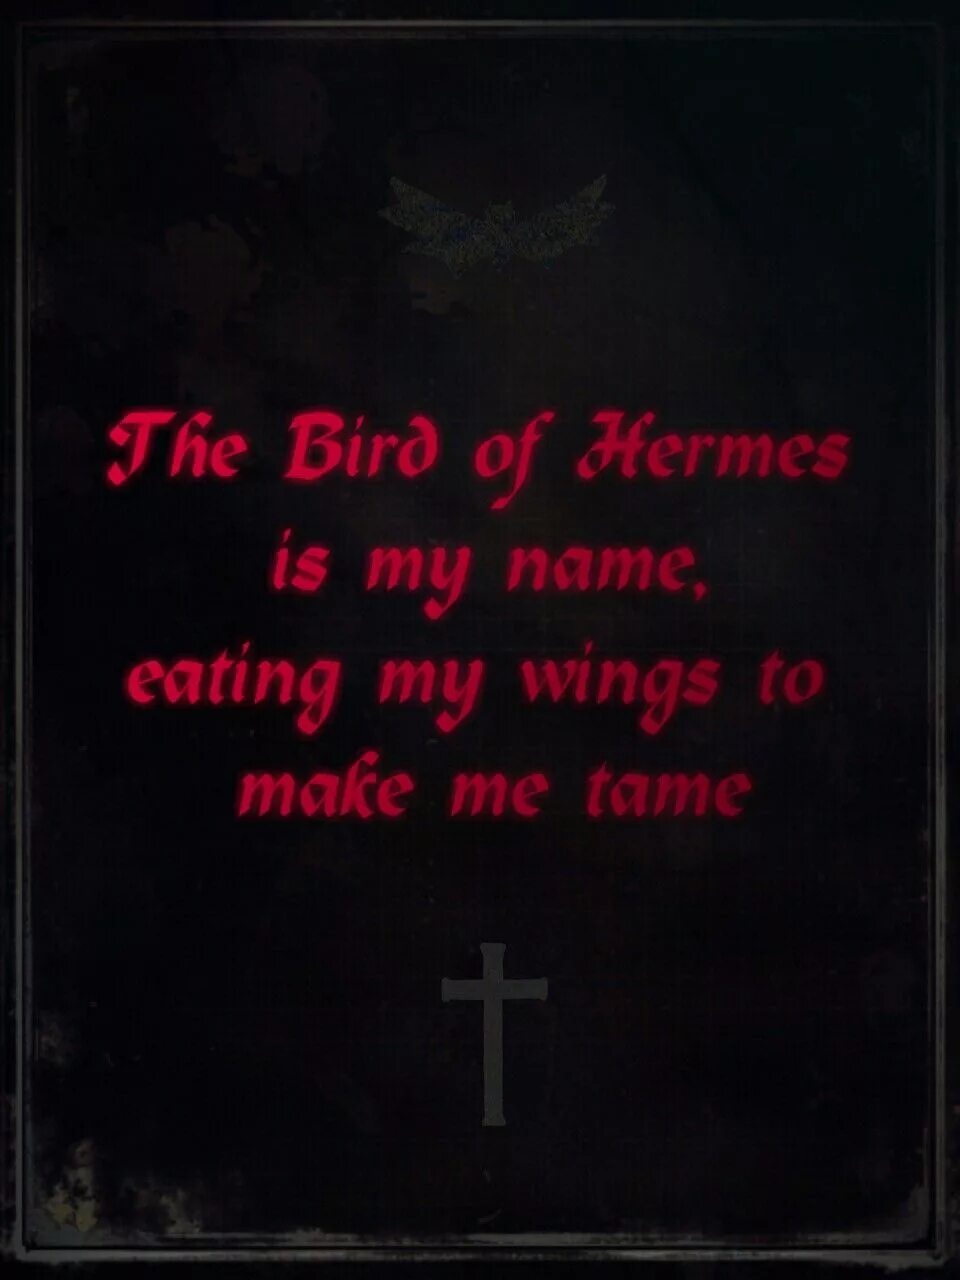 Птицей гермеса меня называют крылья свои пожирая. The Bird of Hermes is my name eating my Wings to make me Tame. Hellsing. Bird of Hermes is my name. Hellsing Bird of Hermes. The Bird of Hermes is my name eating my Wings to make me Tame тату.